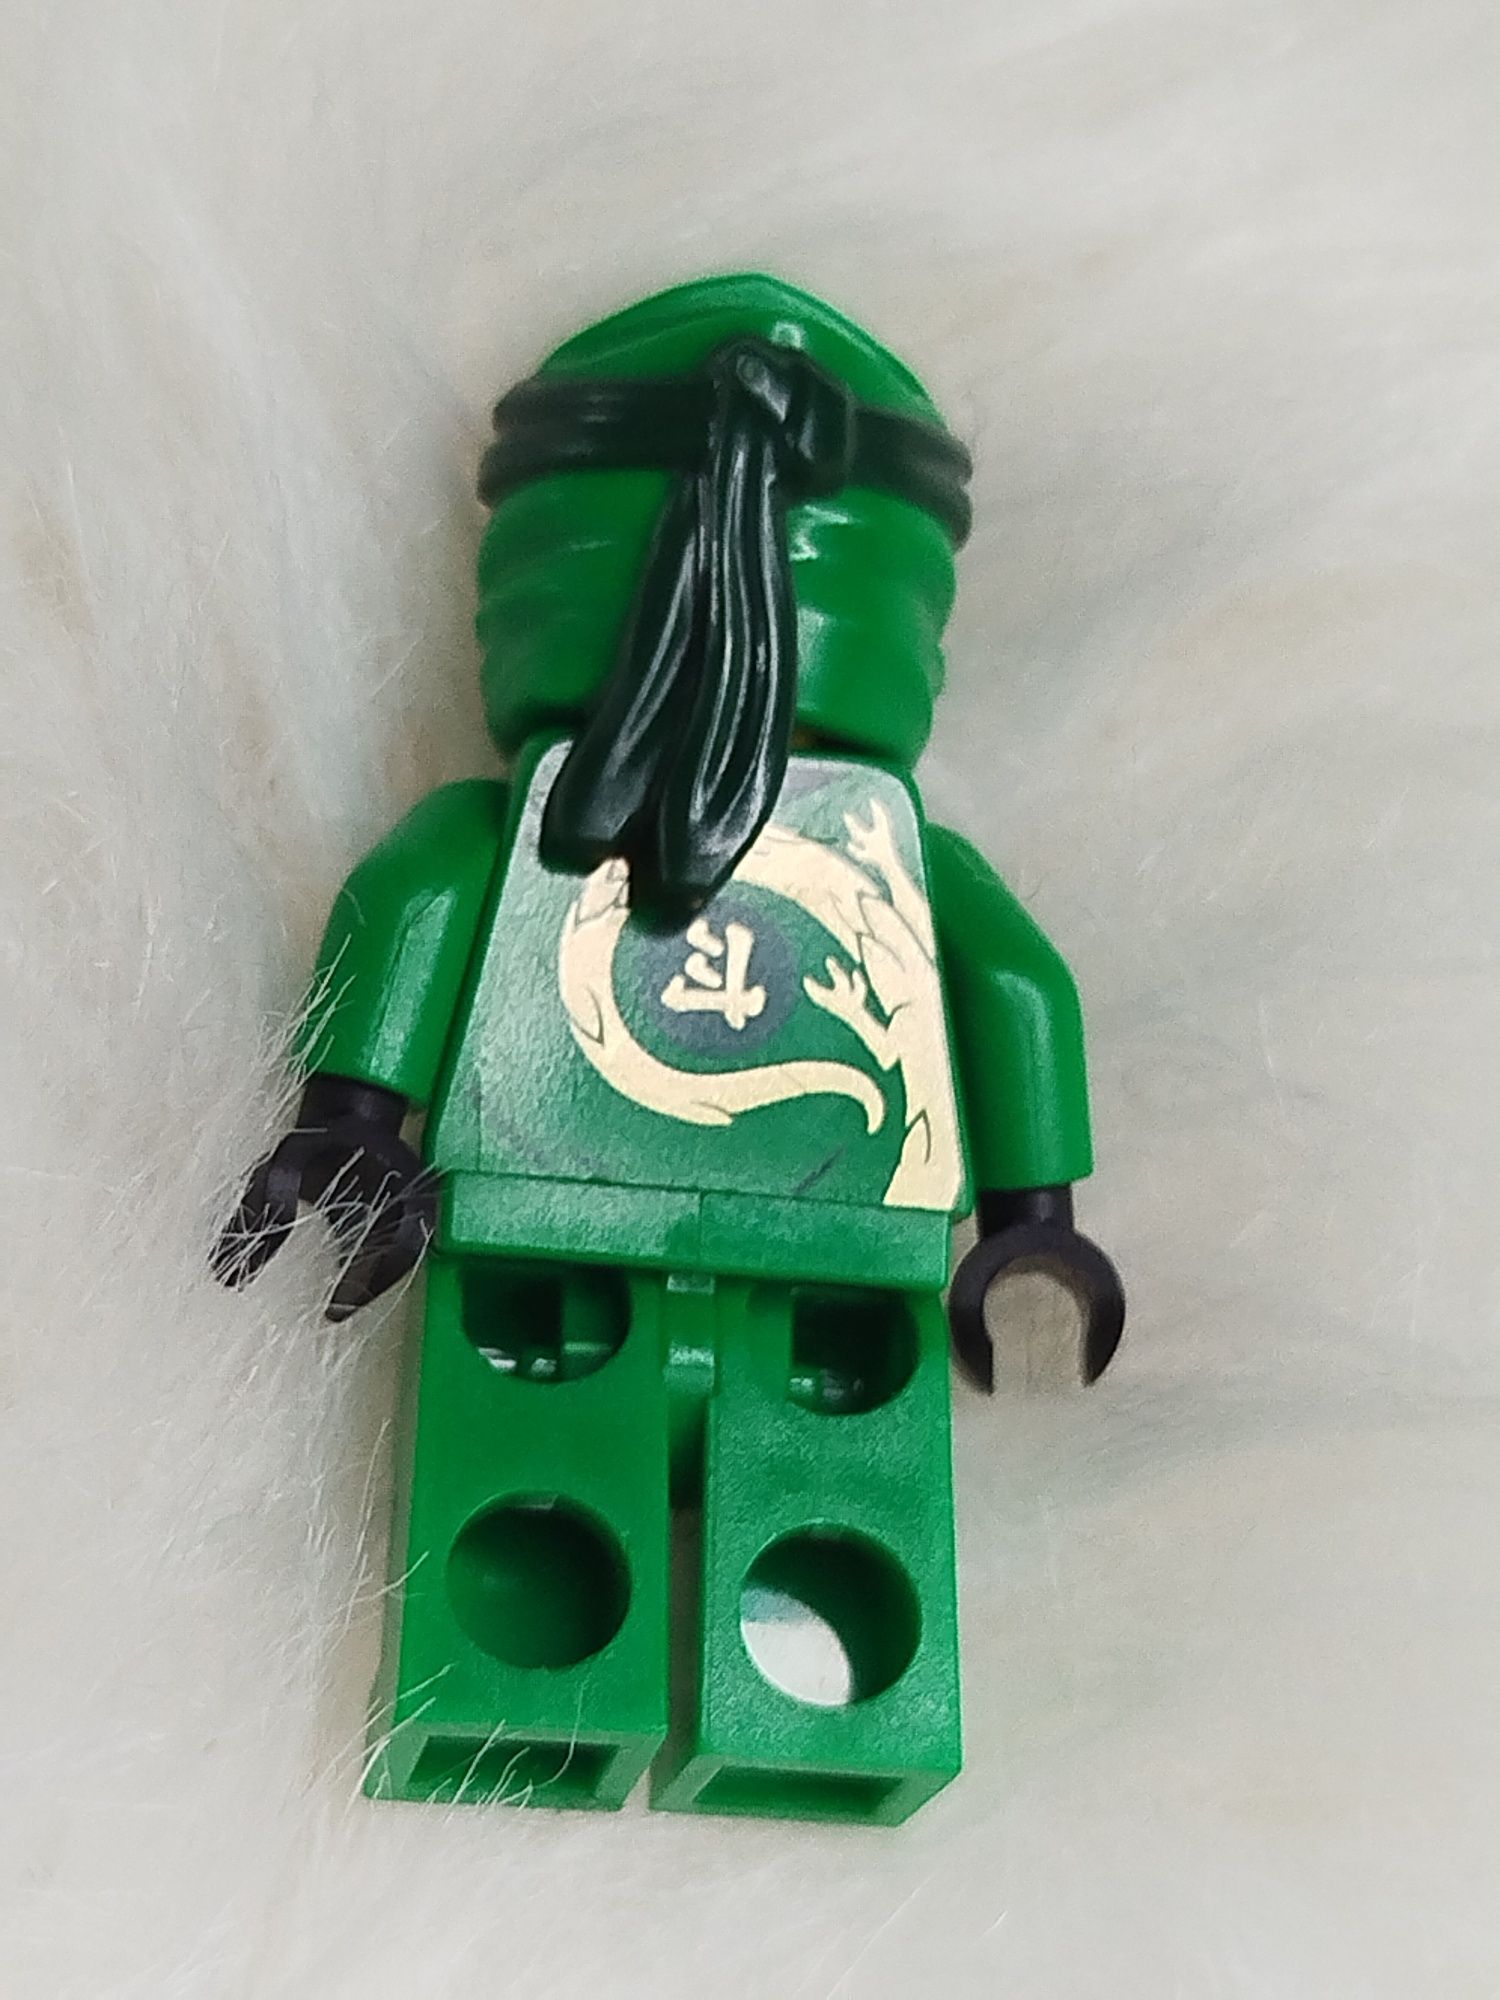 Figurka lego ninjago Lloyd